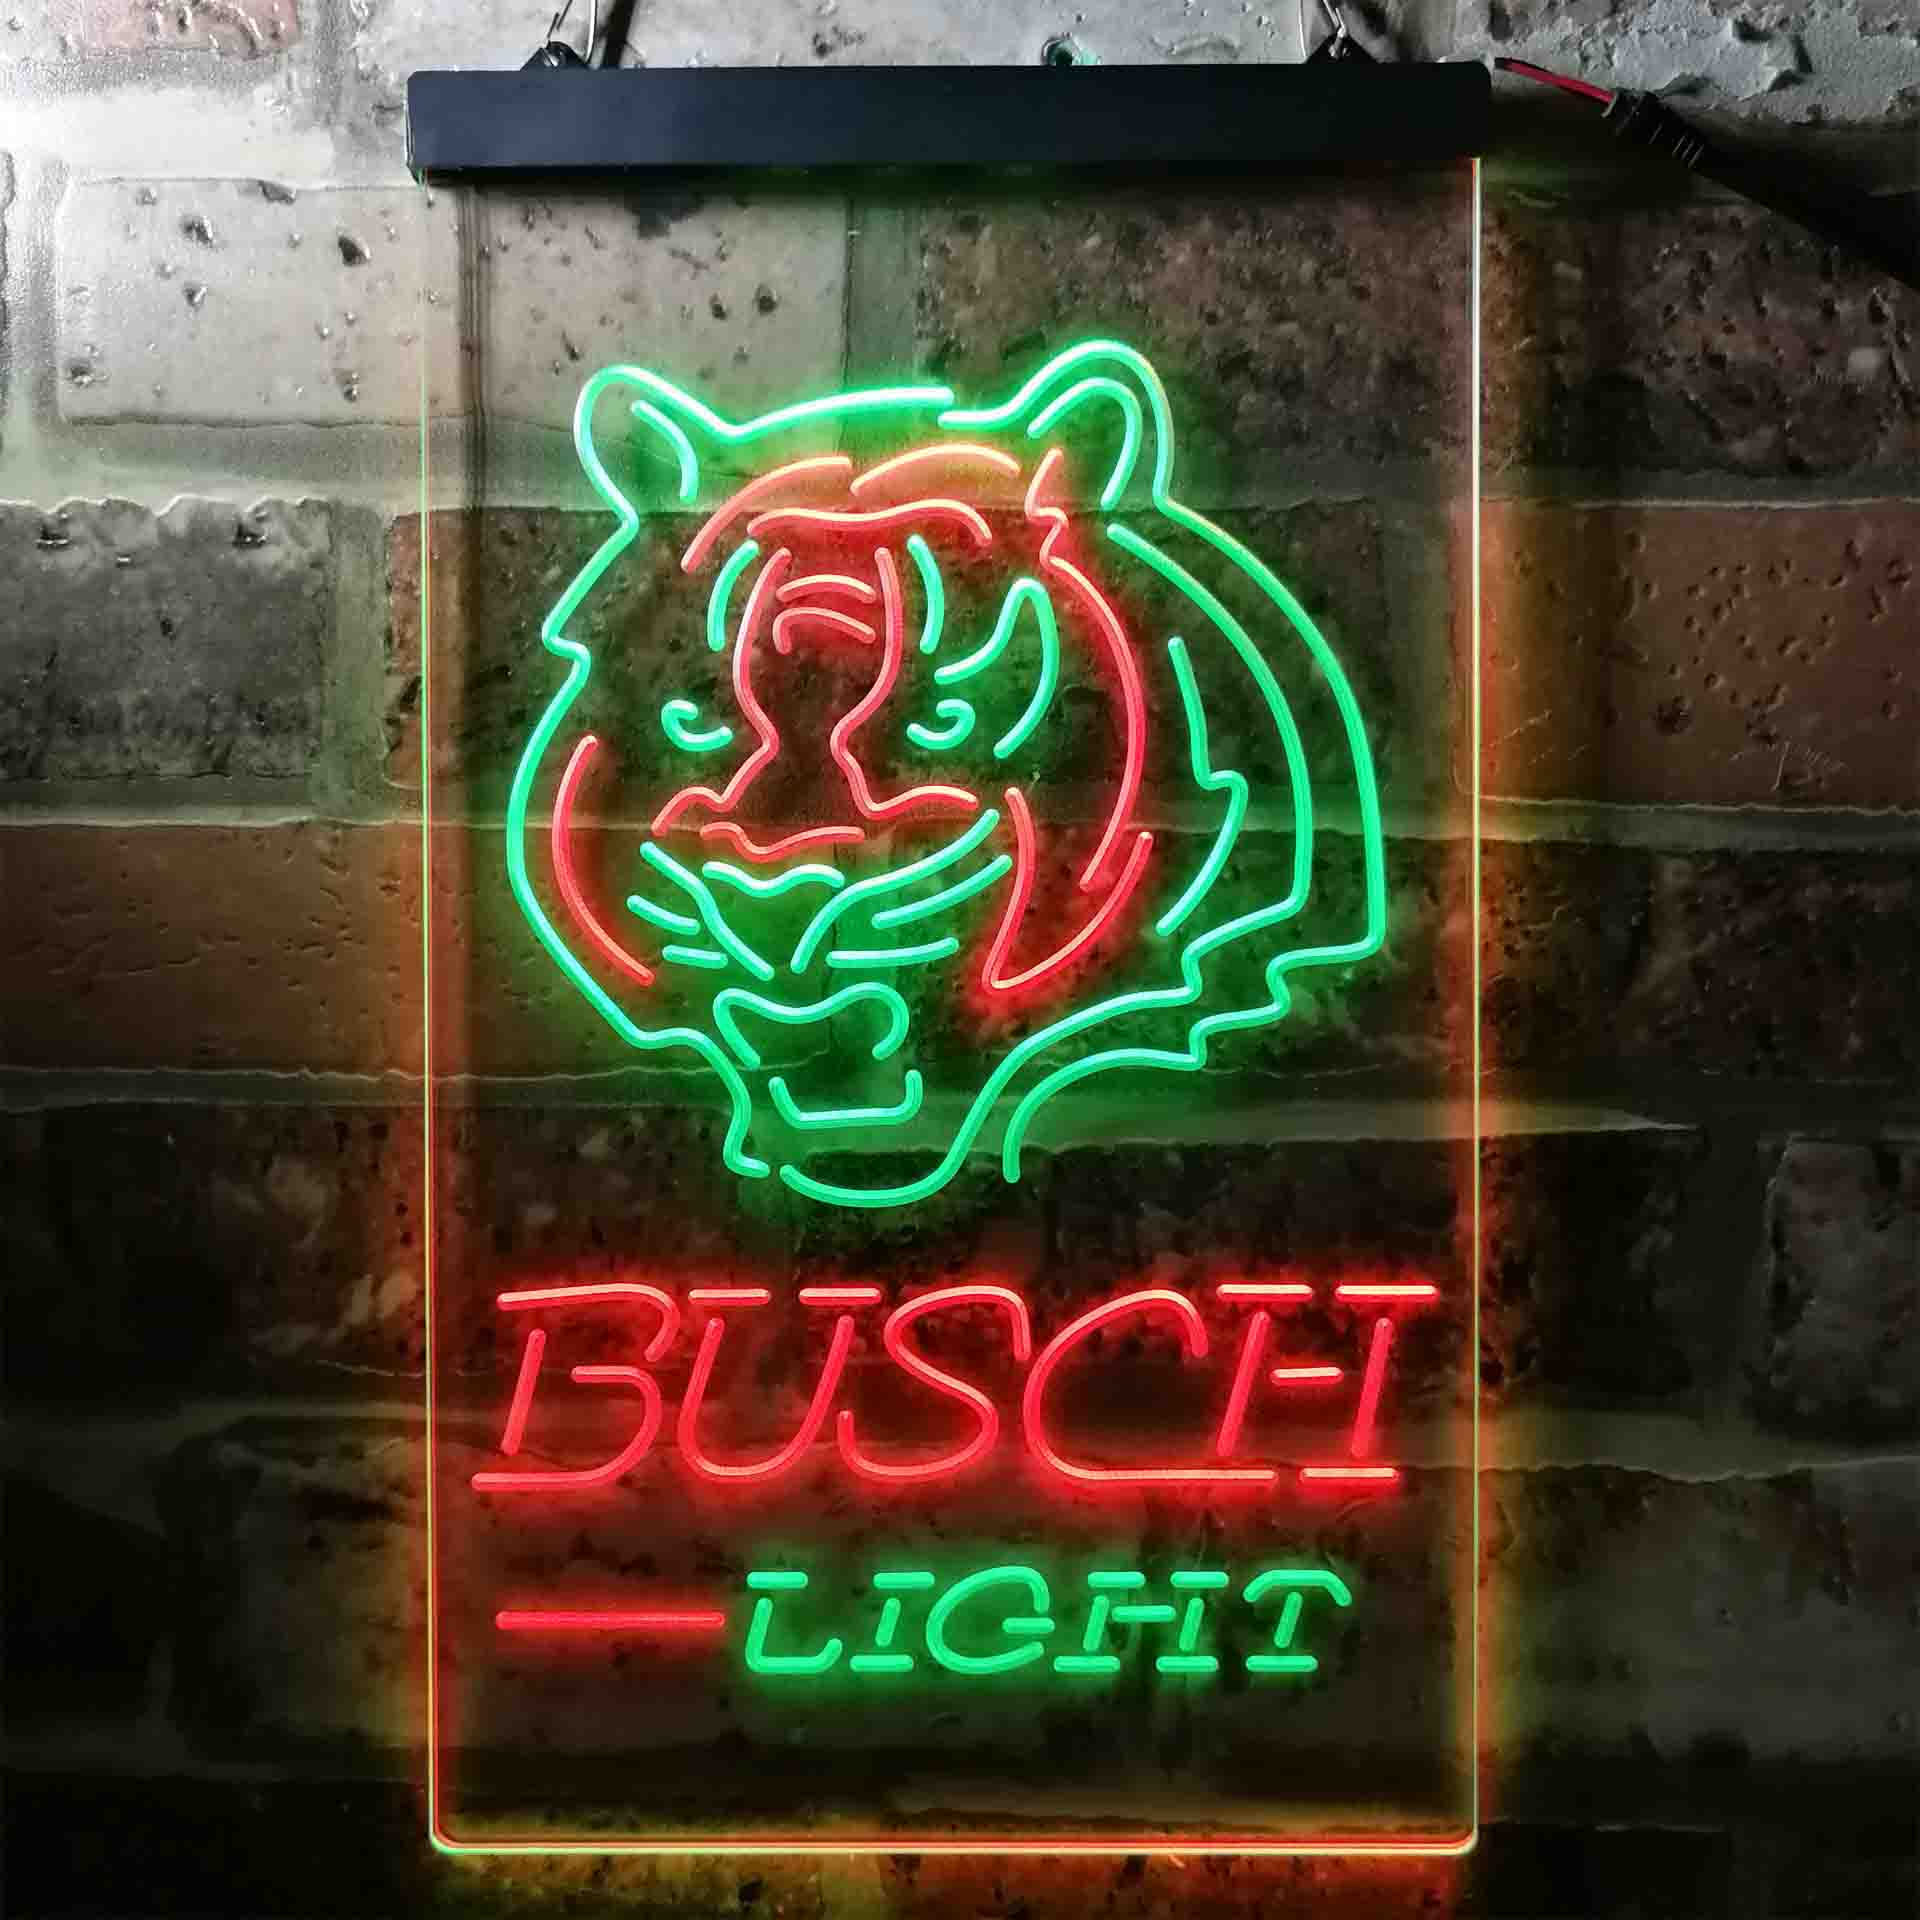 Sport Team Cincinnatis League Club Souvenir Fan Lamp Bengals LED Neon Sign